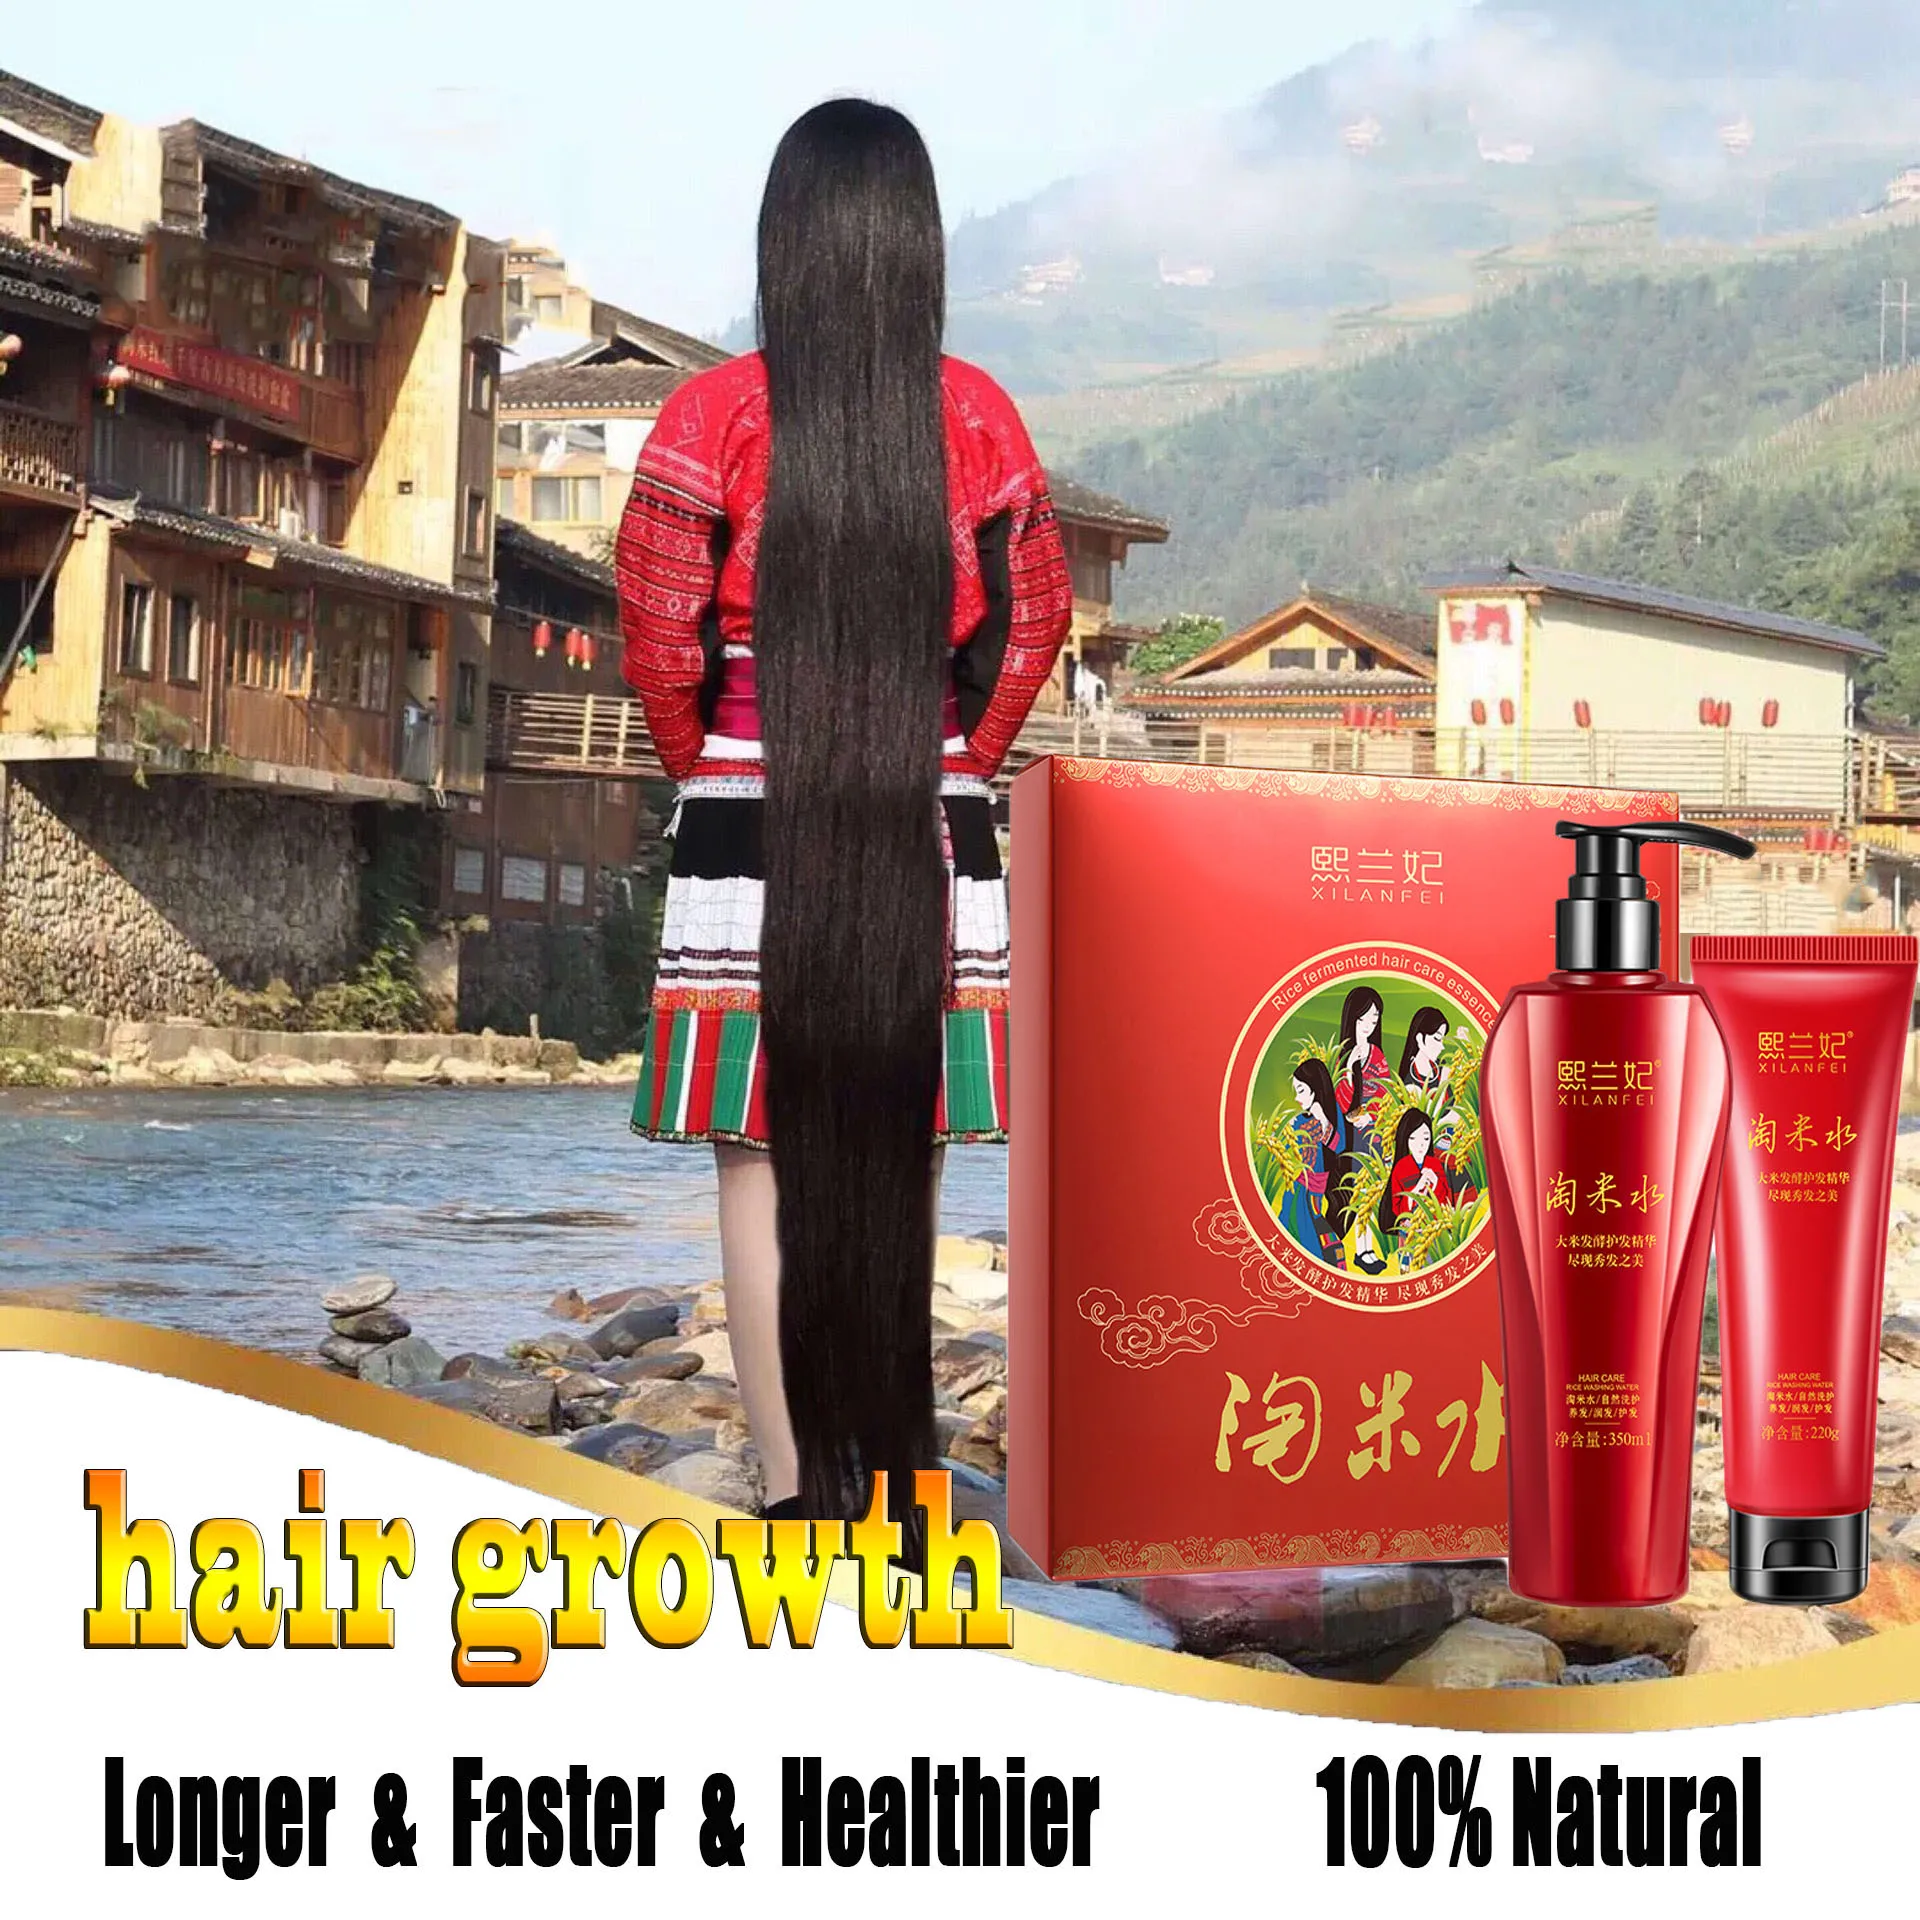 350ml Rice Hair Growth Shampoo 220ml Conditioner Set Anti Hair Loss Fast Grow Natural Hair Care Hair Treatment Activate Scalp